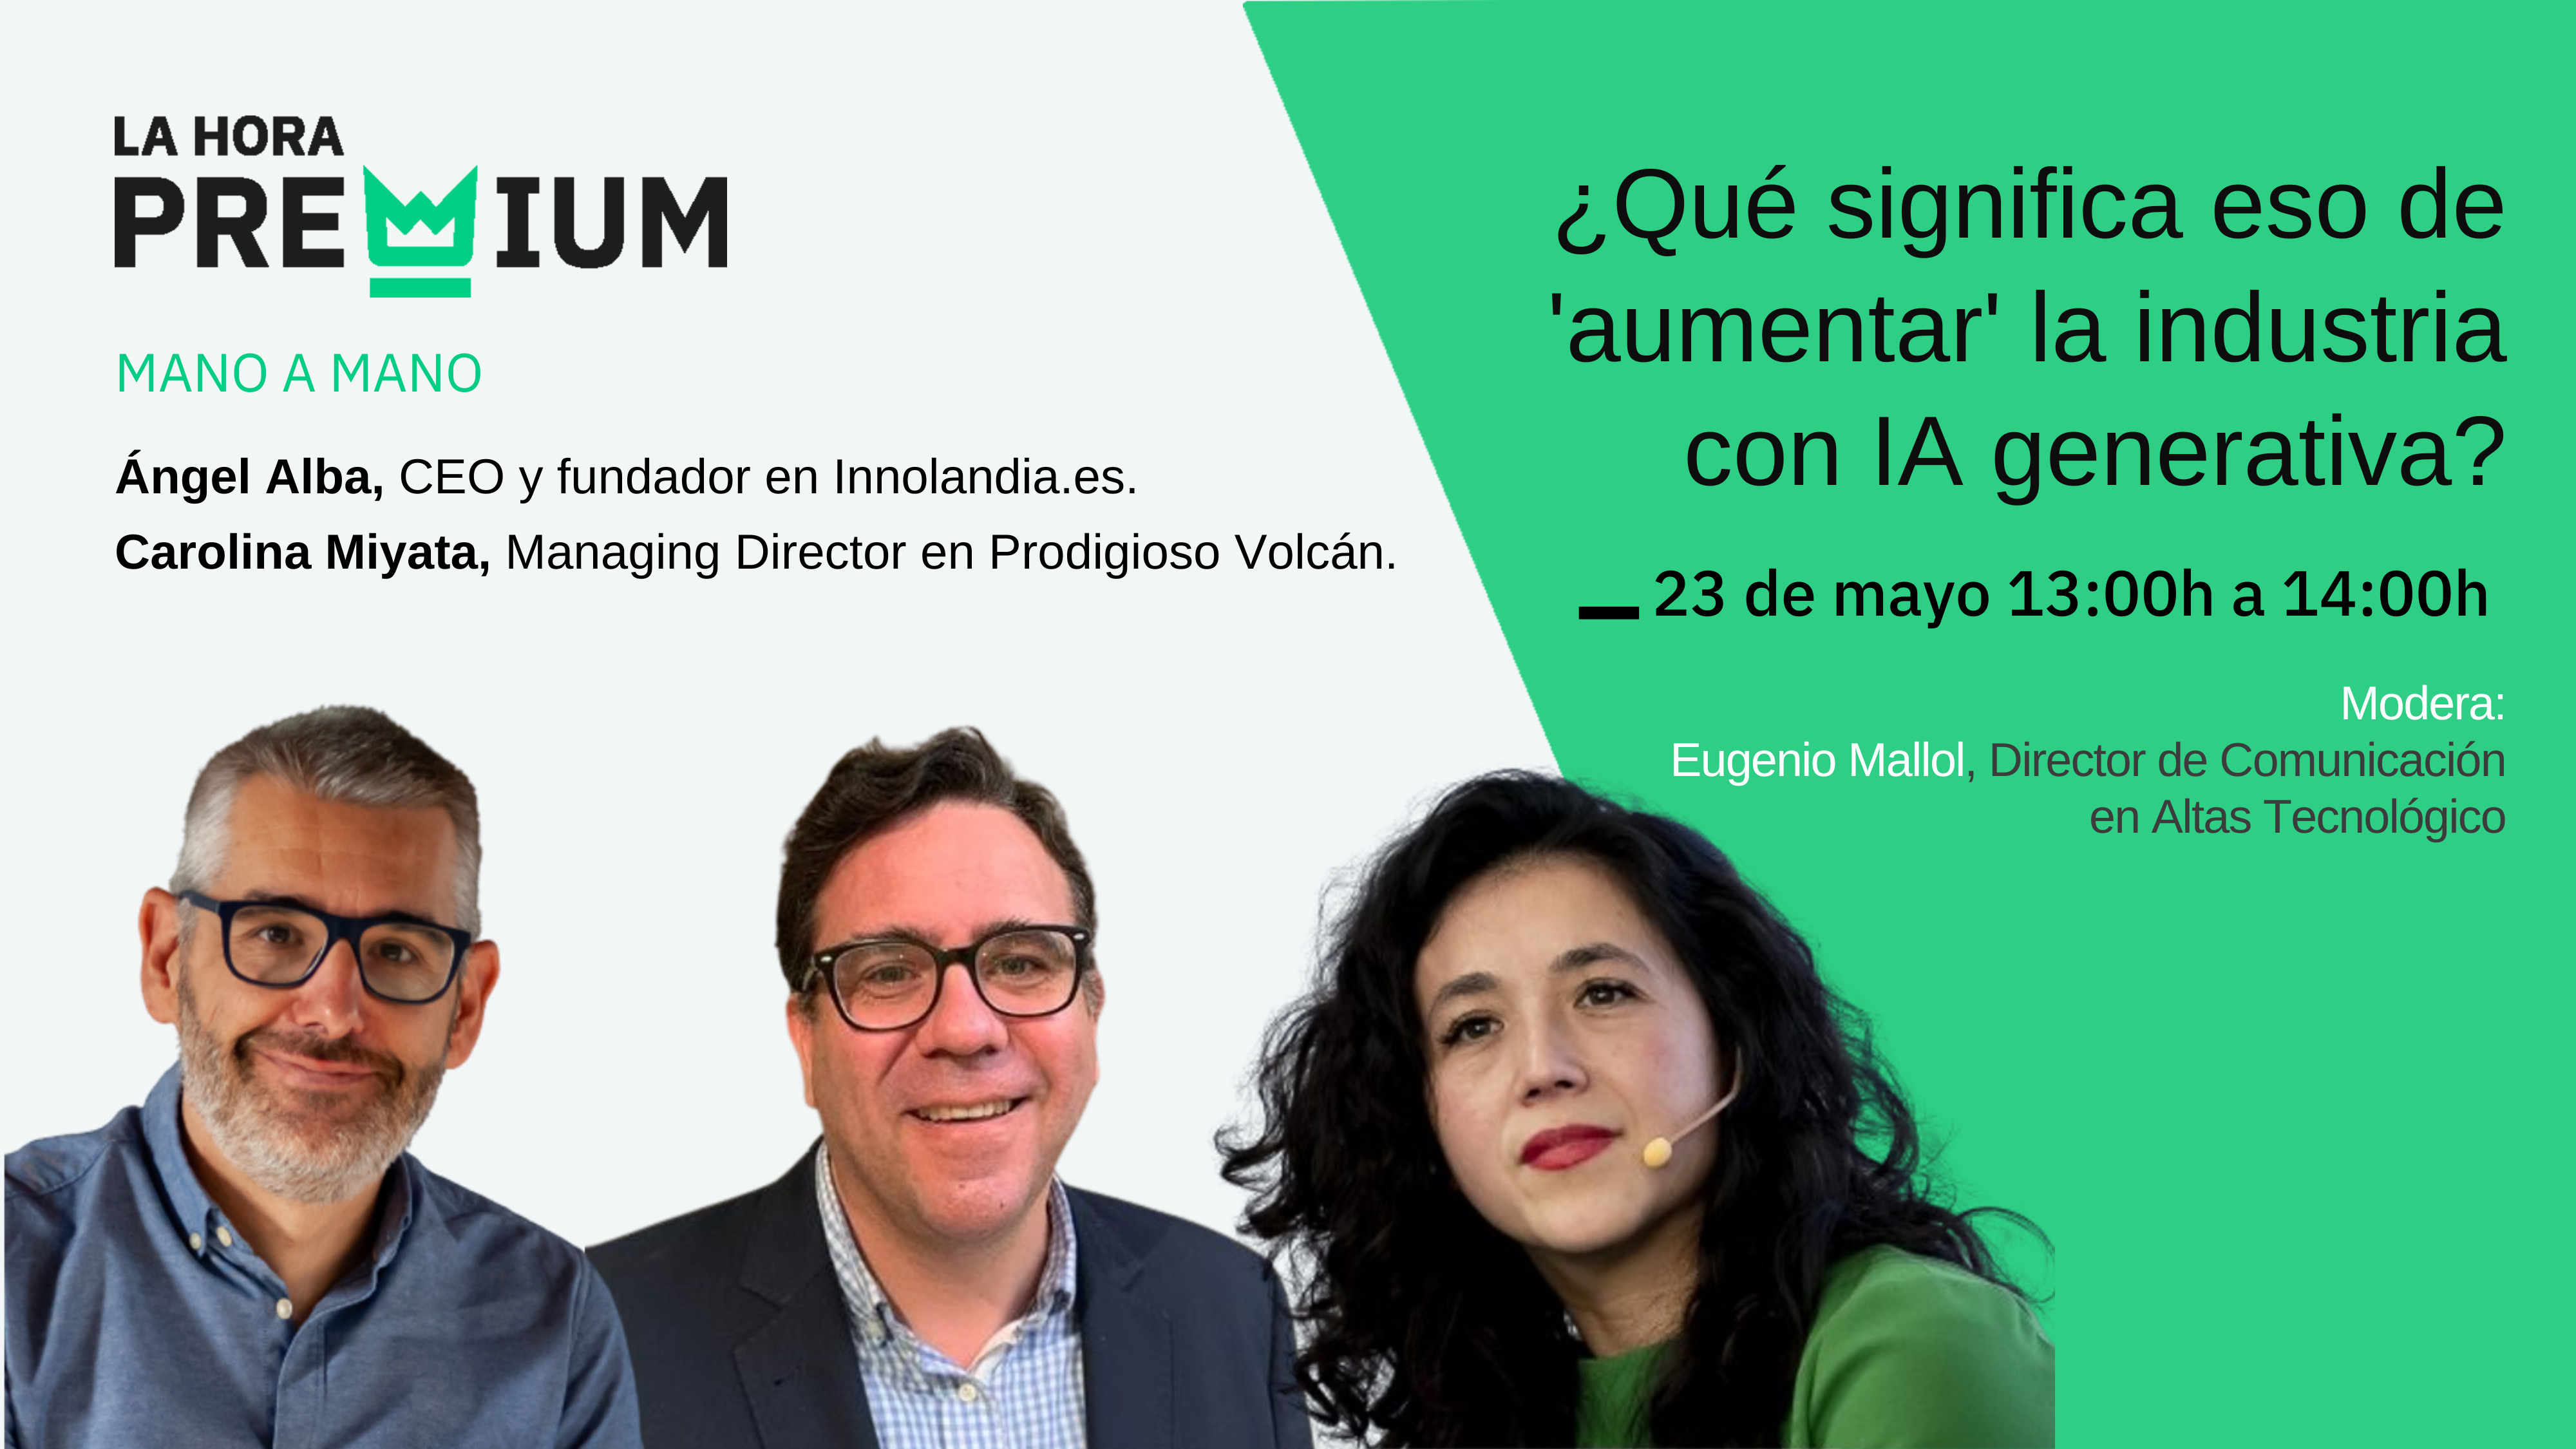 Ángel Alba y Carolina Miyata hablarán en La Hora Premium acerca del aumento de la industria con IA generativa